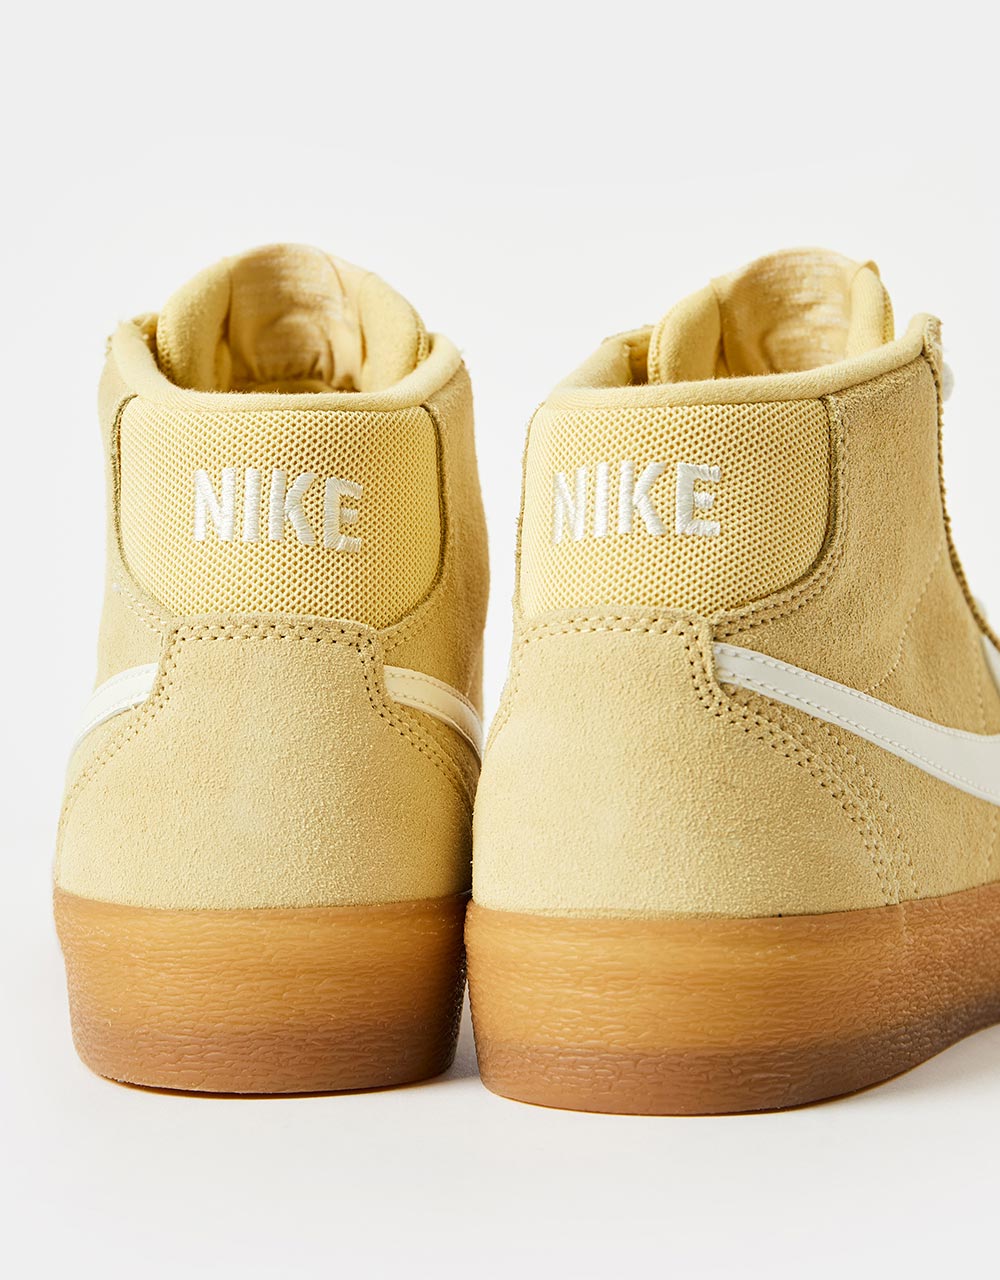 Nike SB Bruin High Skate Shoes - Lemon Wash/Sail-Lemon Wash